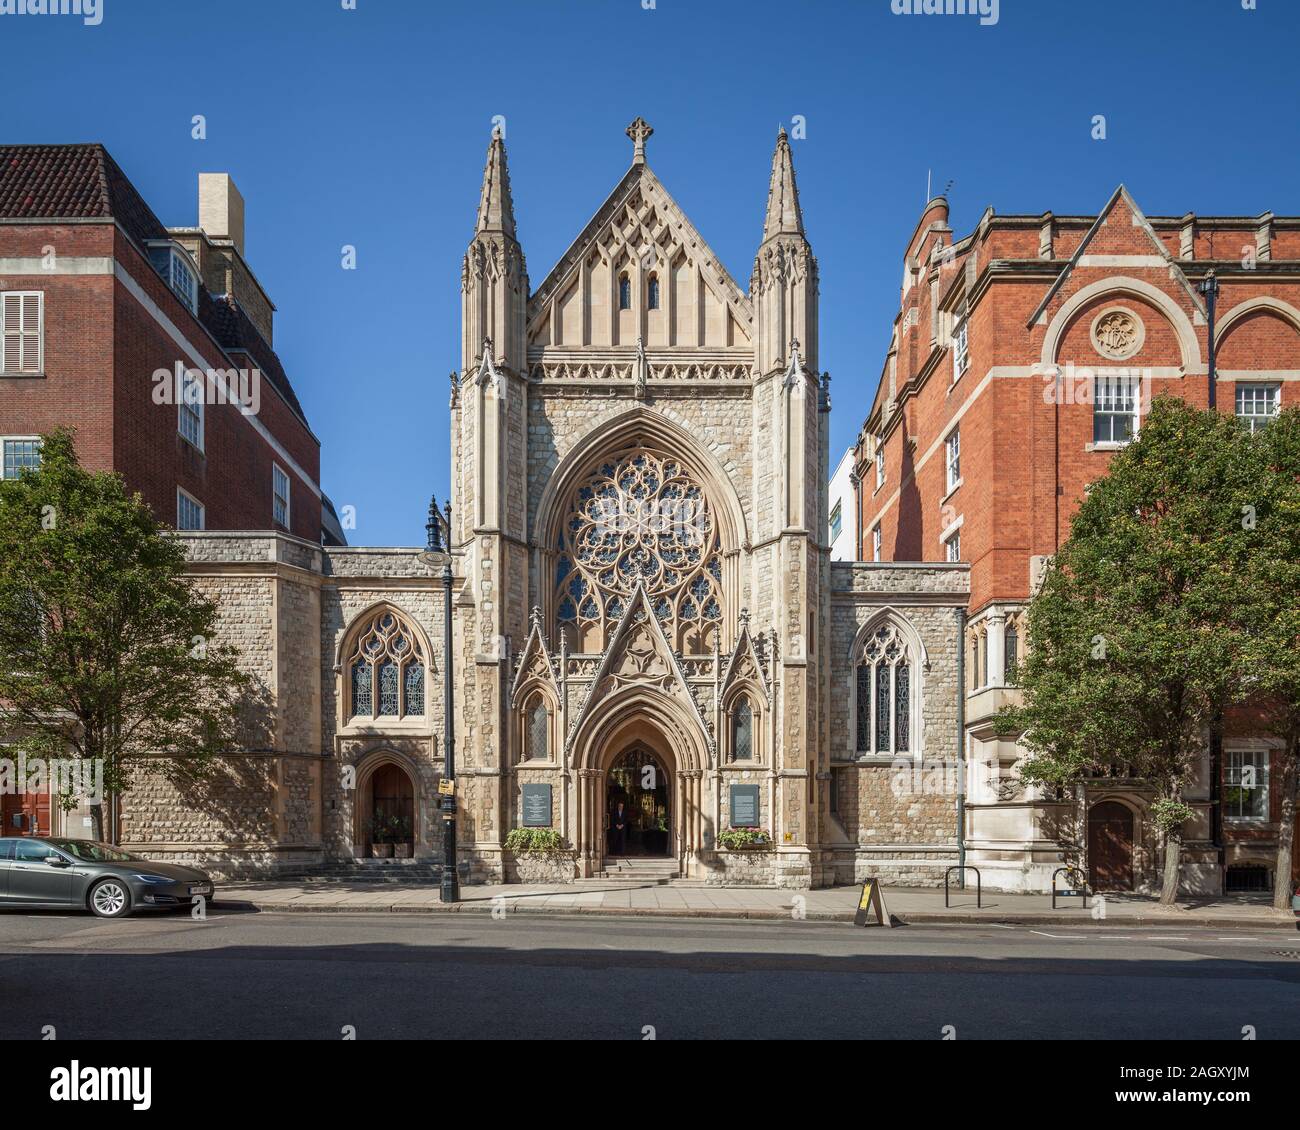 Iglesia de la calle de granja, Mayfair, Londres, Reino Unido. Foto de stock